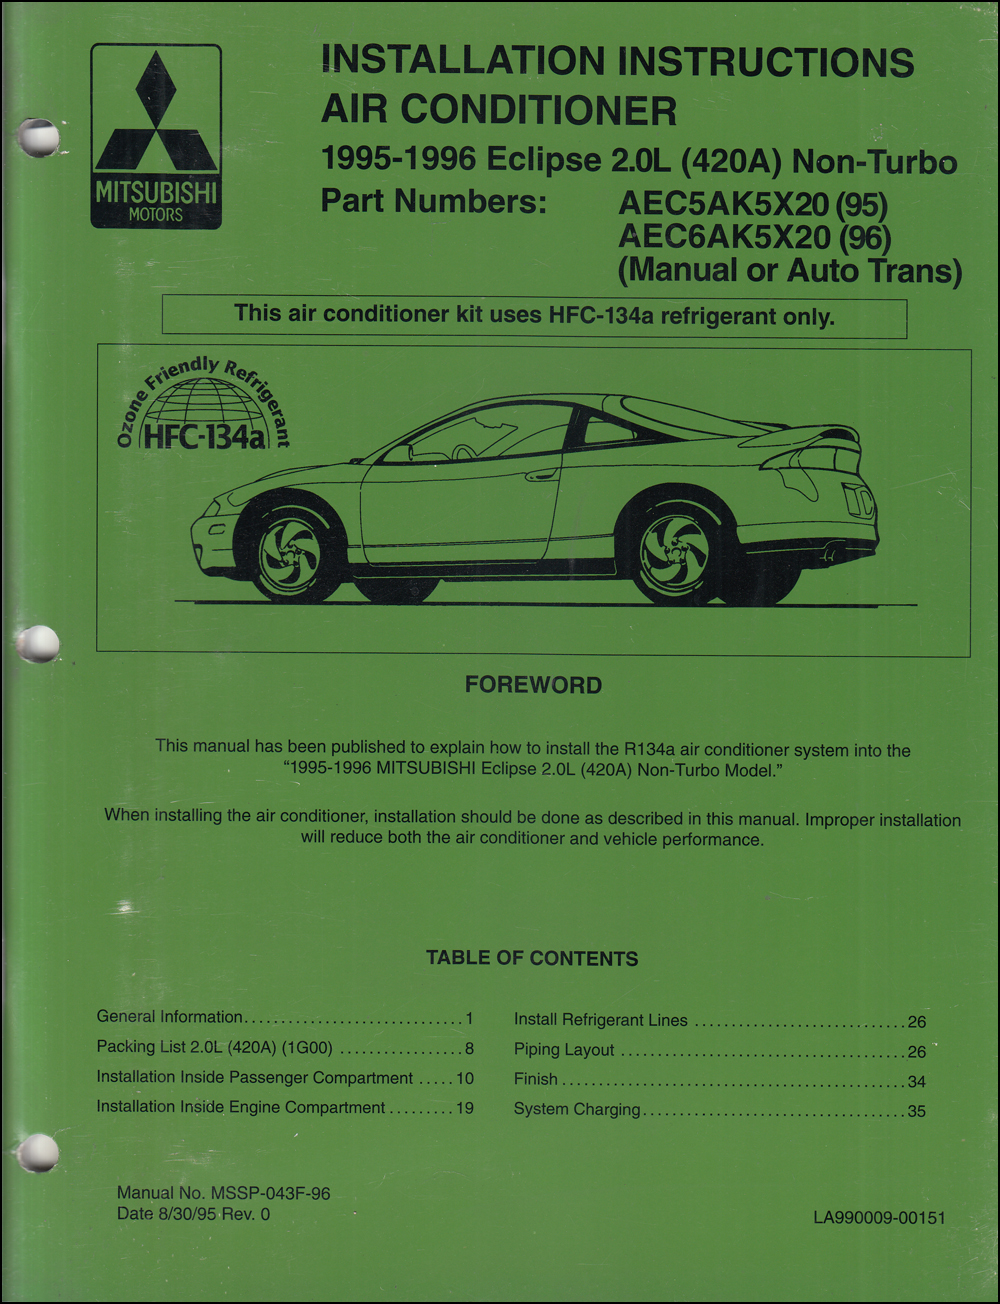 1995-1996 Mitsubishi Eclipse 2.0L  Eclipse 2.0L non-turbo Air Conditioner Installation Instruction Manual Original